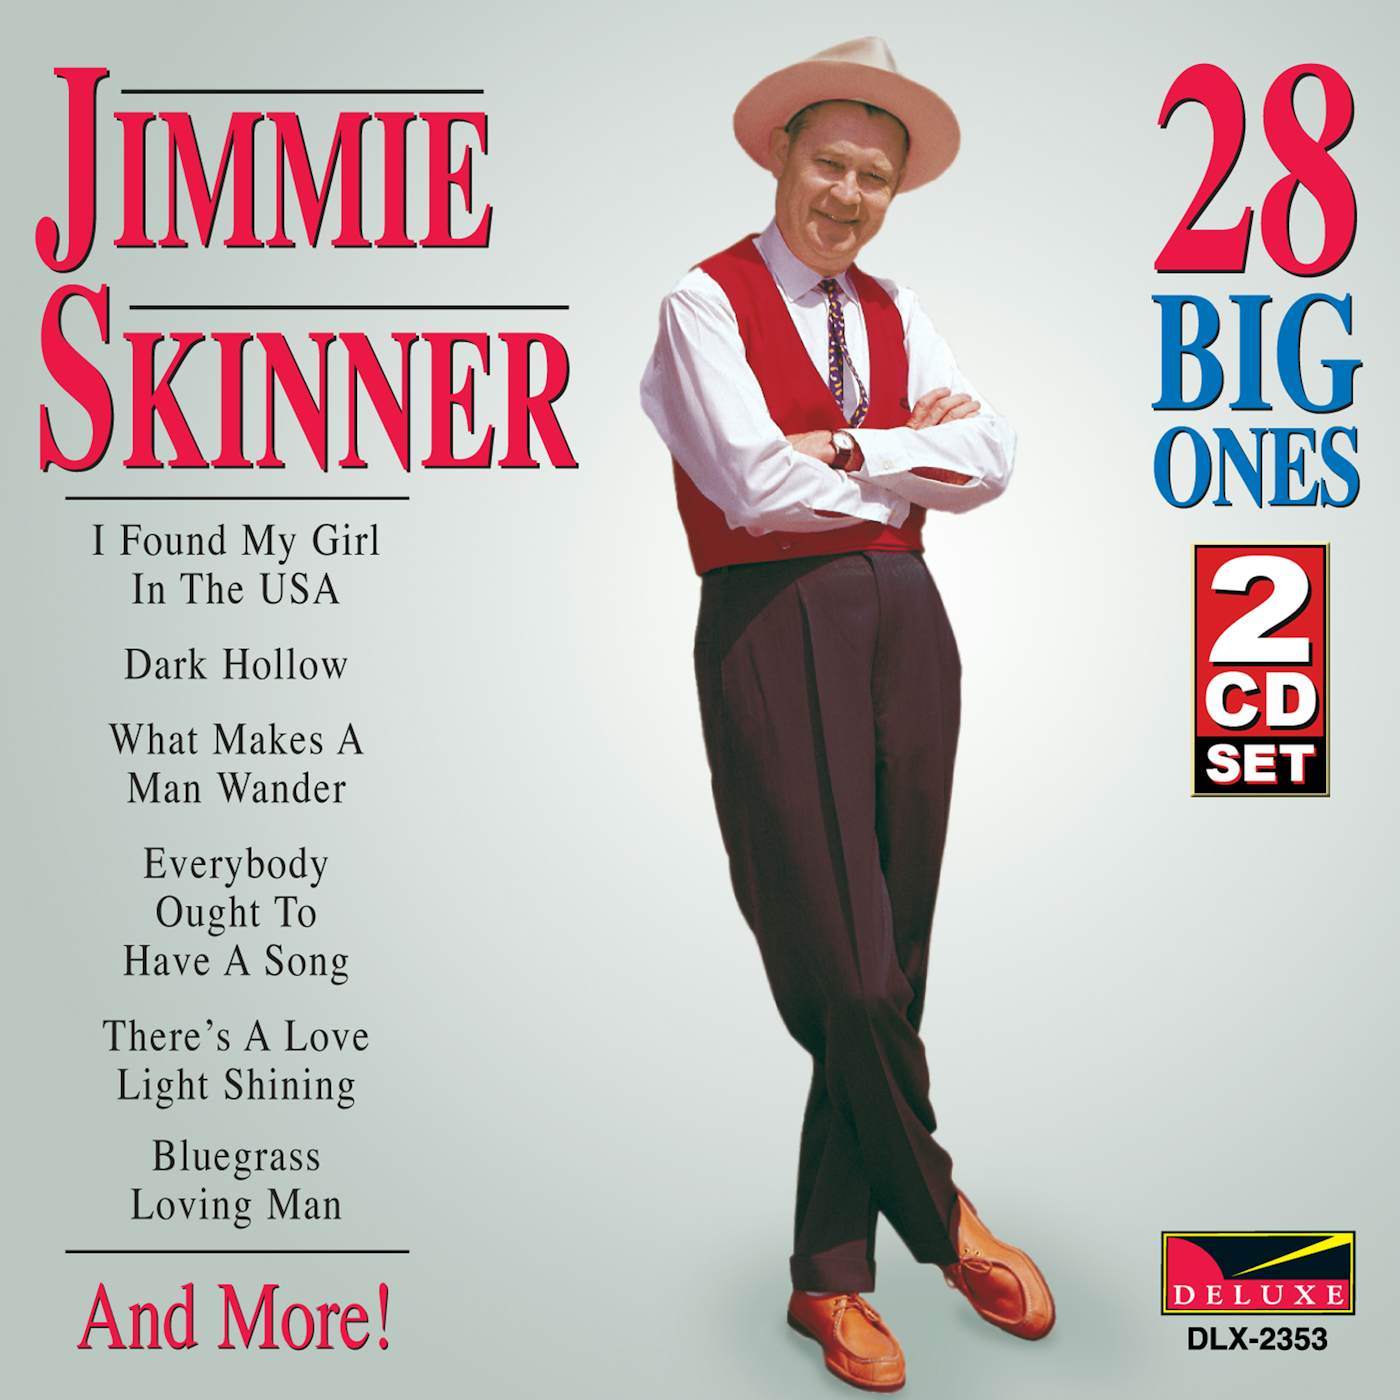 Jimmie Skinner 28 BIG ONES CD